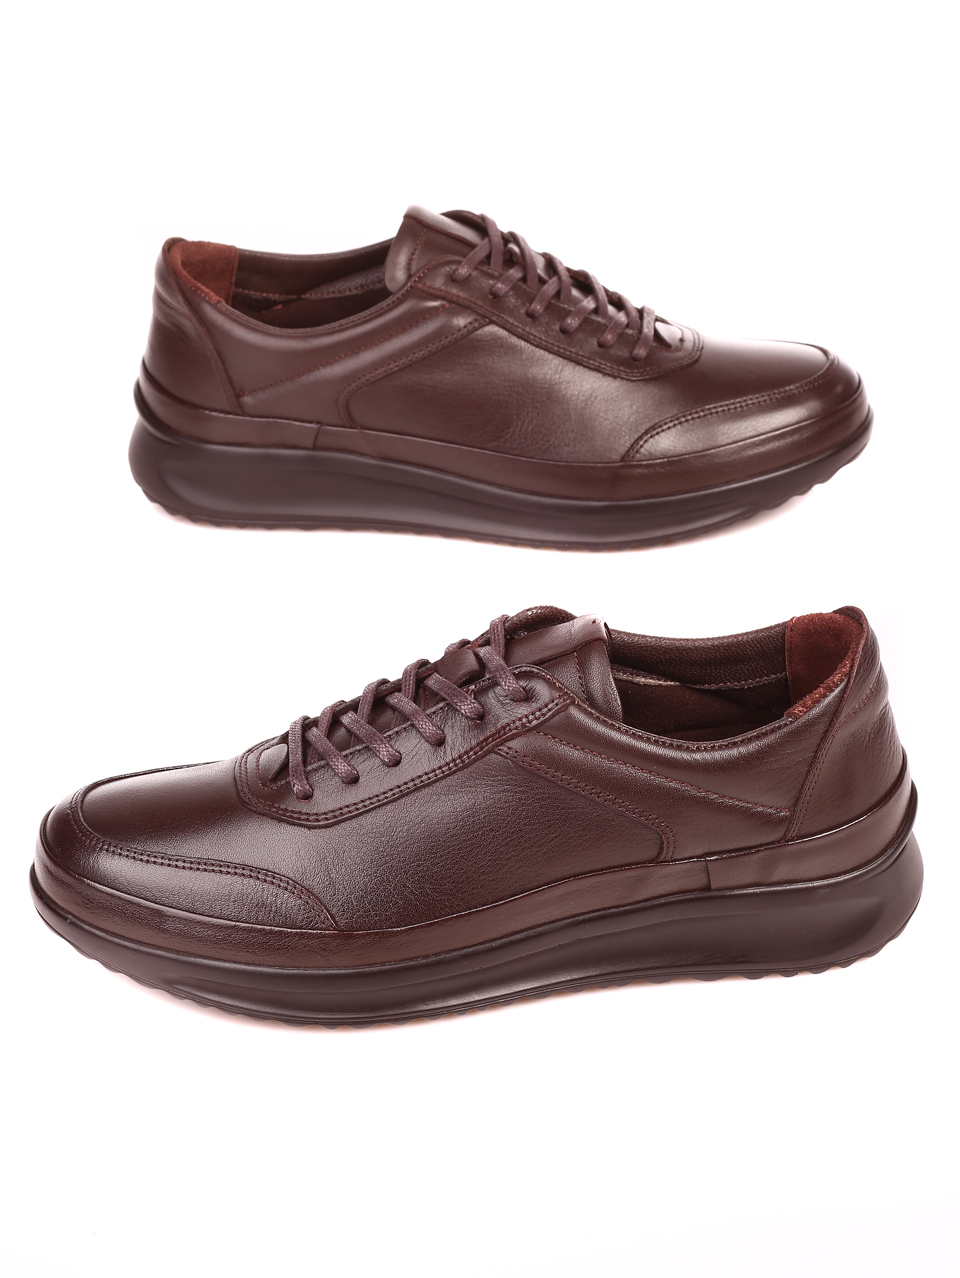 Ежедневни мъжки обувки от естествена кожа 7AT-21849 brown